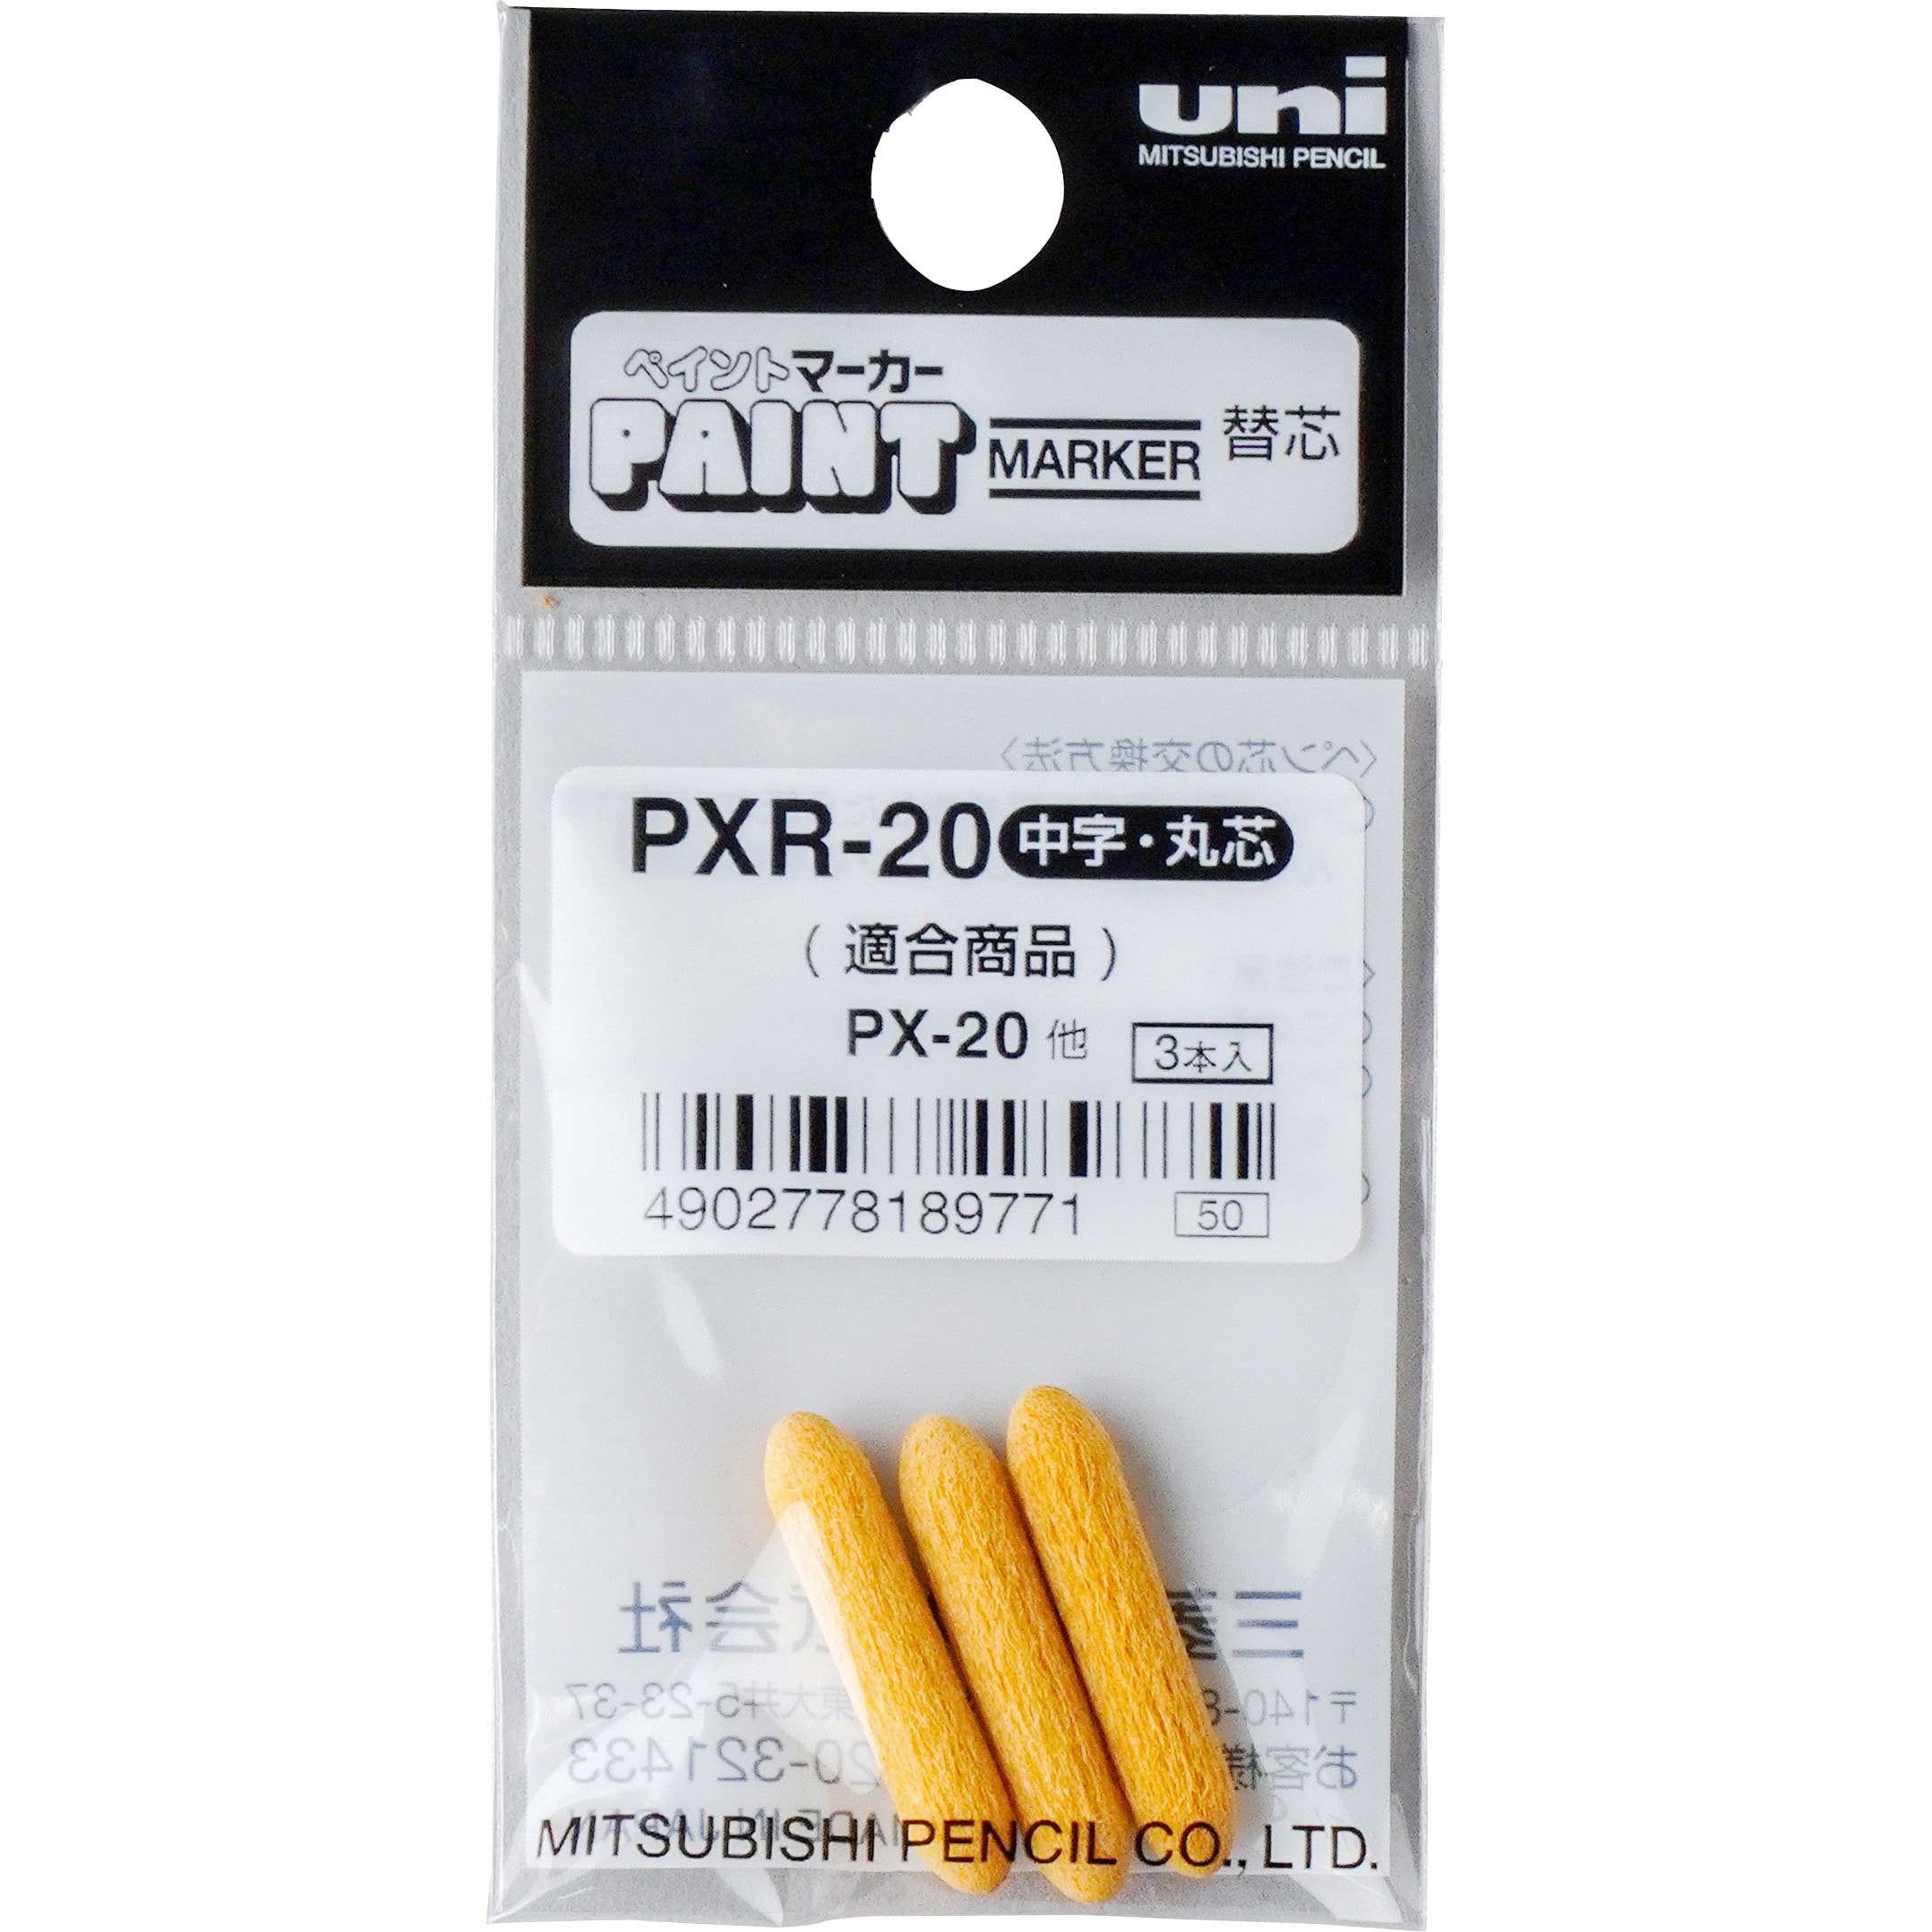 PXR-20 ペイントマーカー用替芯 1パック(3本) 三菱鉛筆(uni) 【通販